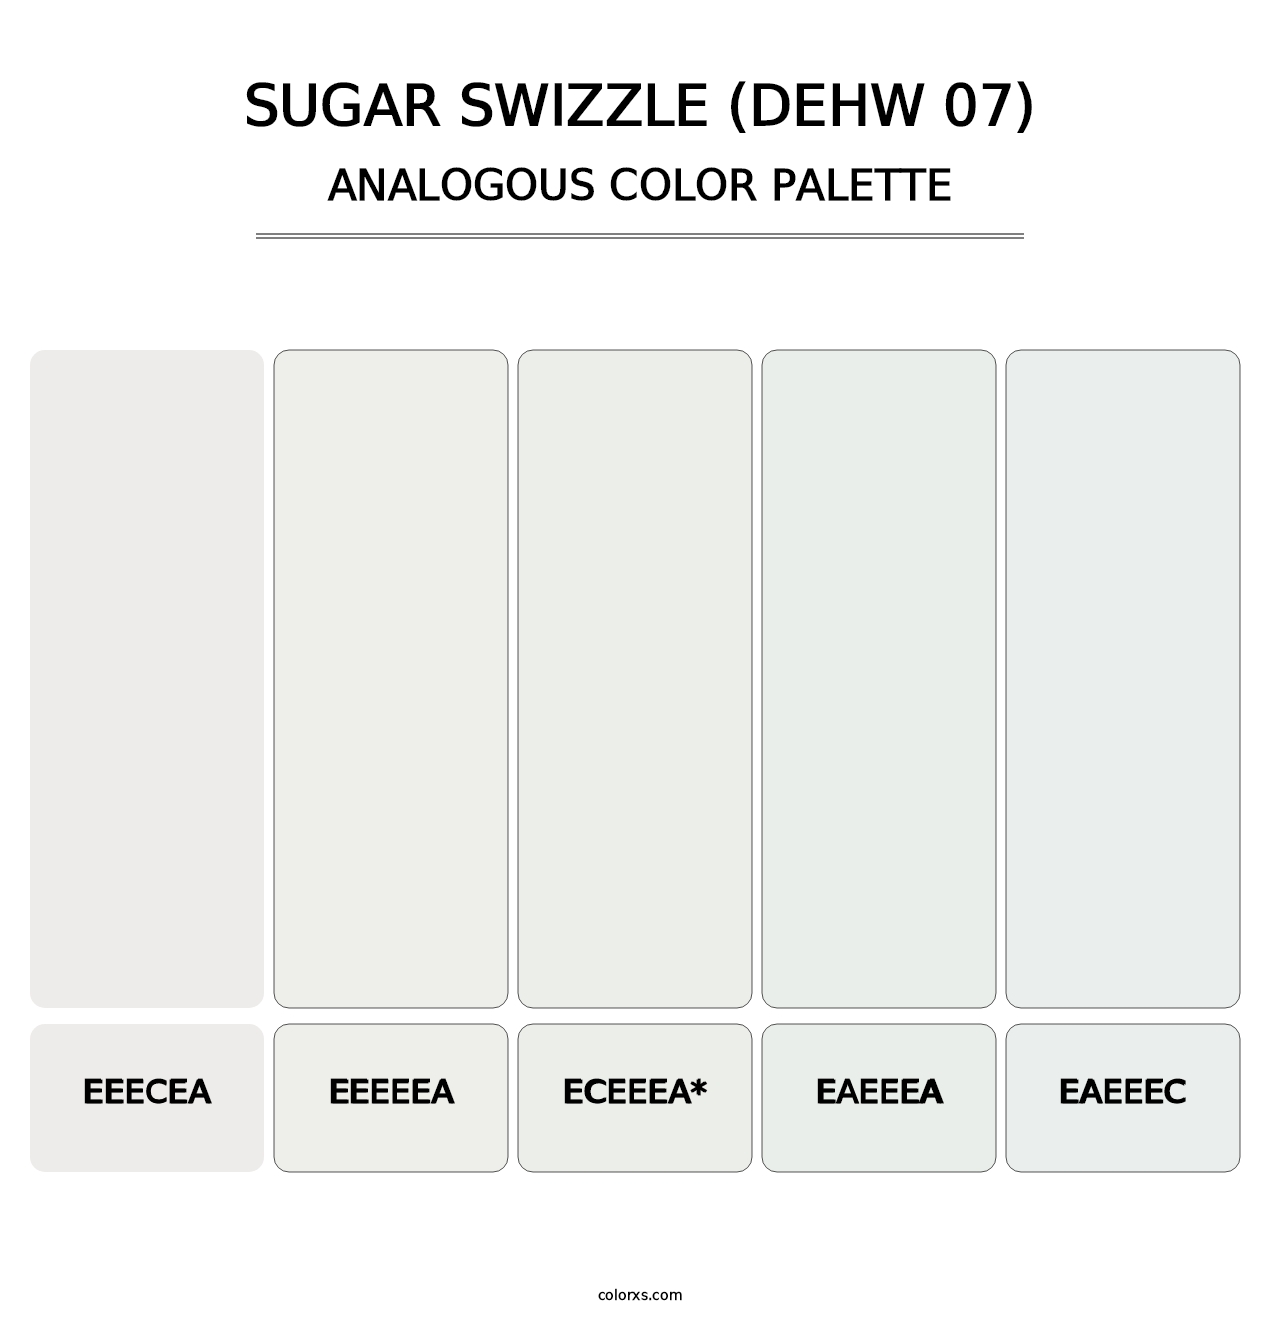 Sugar Swizzle (DEHW 07) - Analogous Color Palette